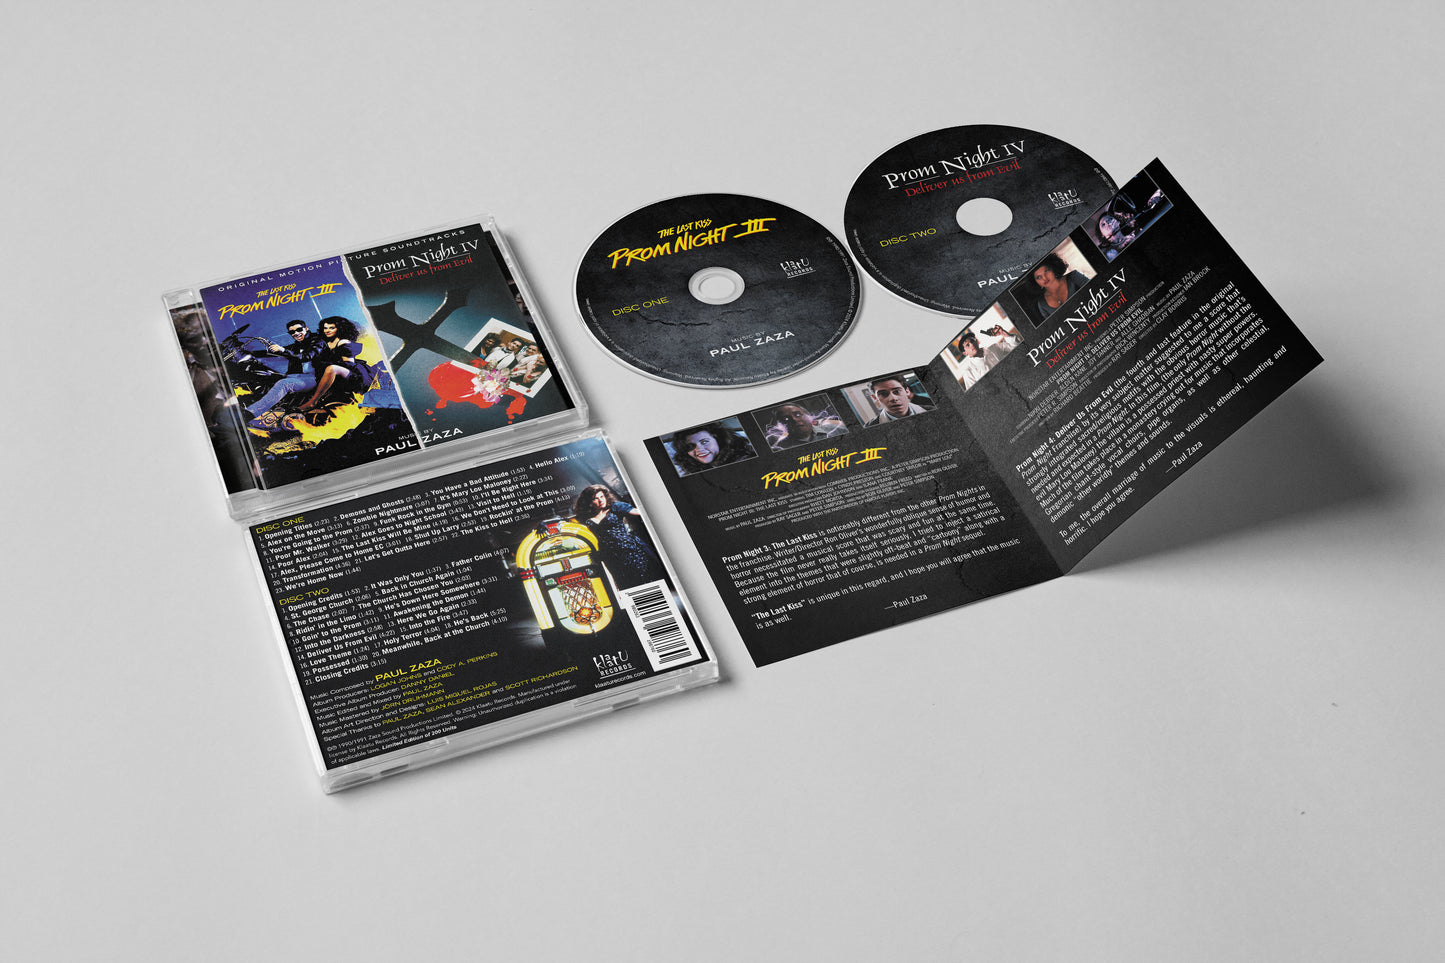 PROM NIGHT III & IV - Original Soundtracks by Paul Zaza